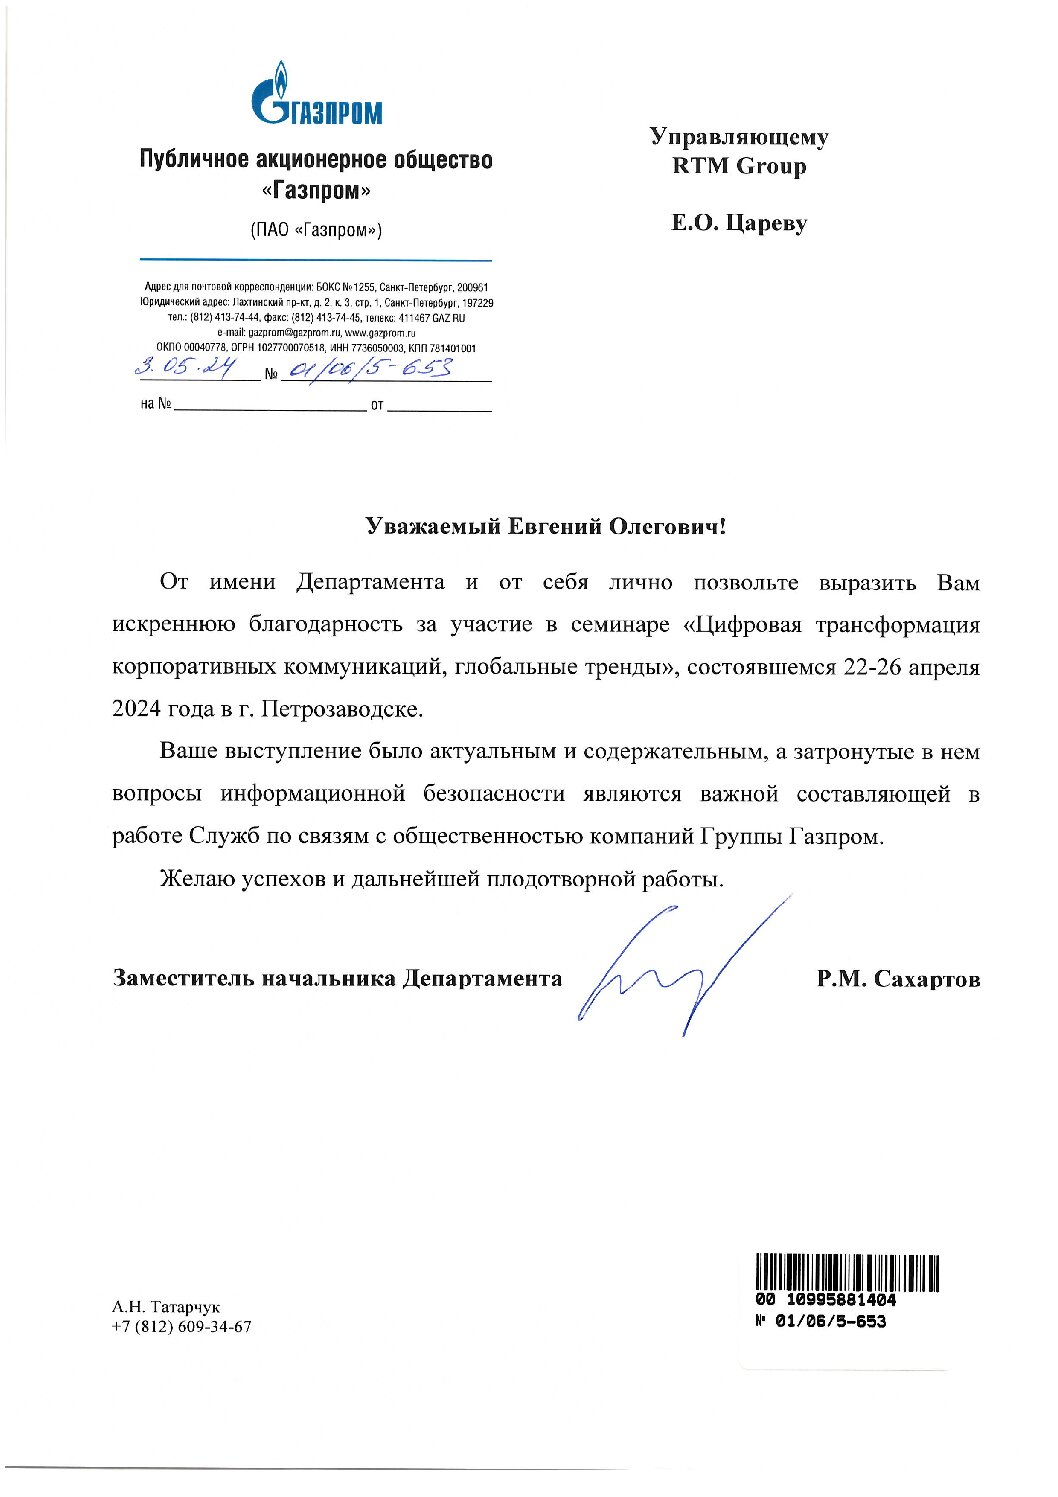 Благодарность от ПАО “Газпром”